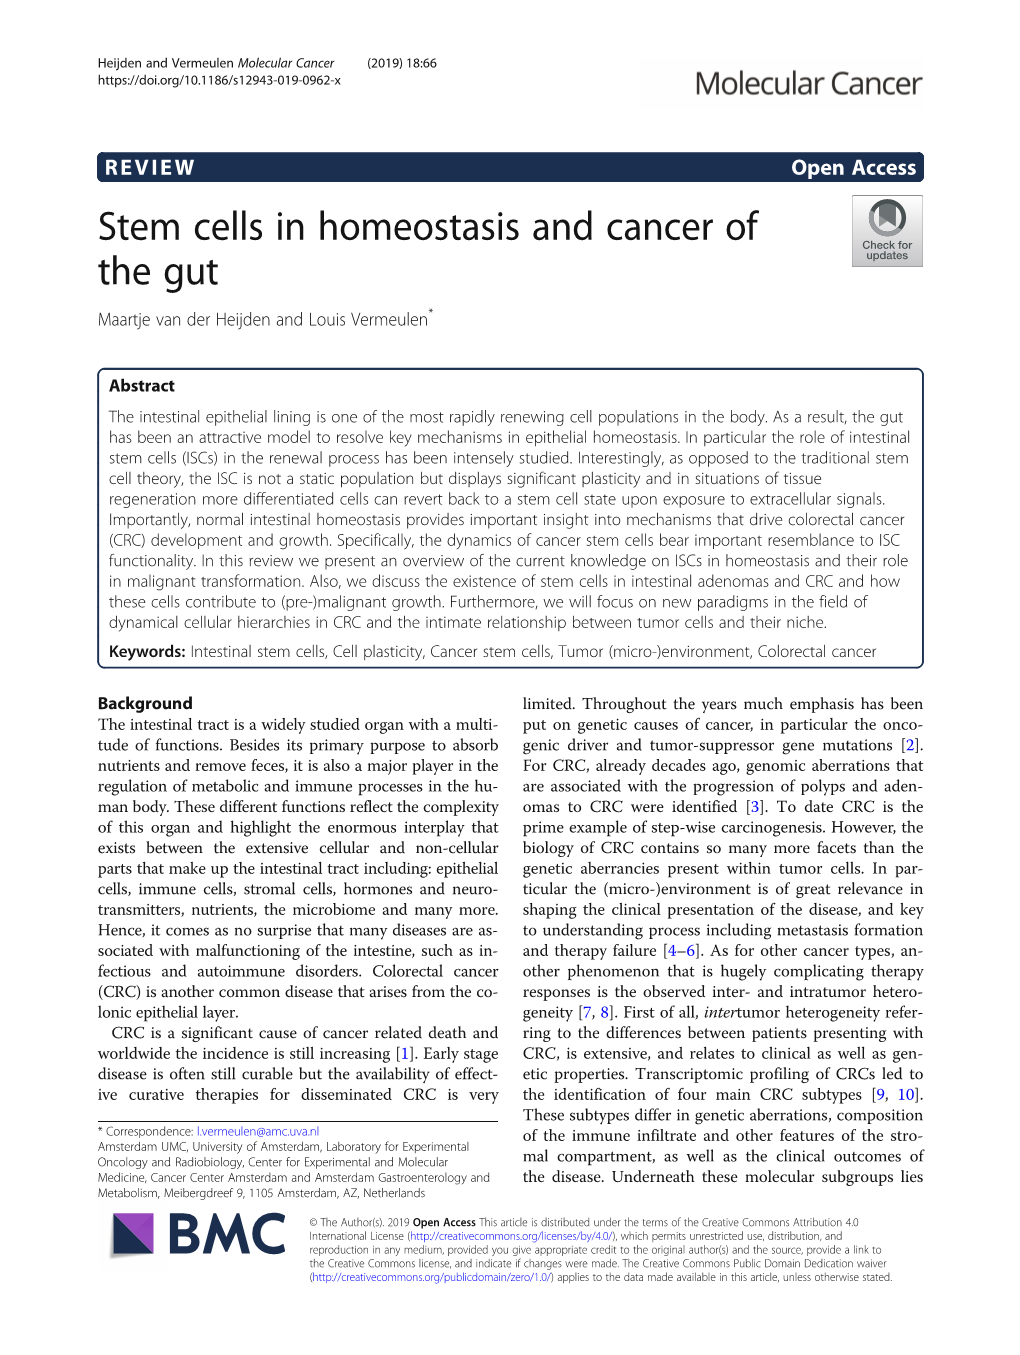 VIEW Open Access Stem Cells in Homeostasis and Cancer of the Gut Maartje Van Der Heijden and Louis Vermeulen*